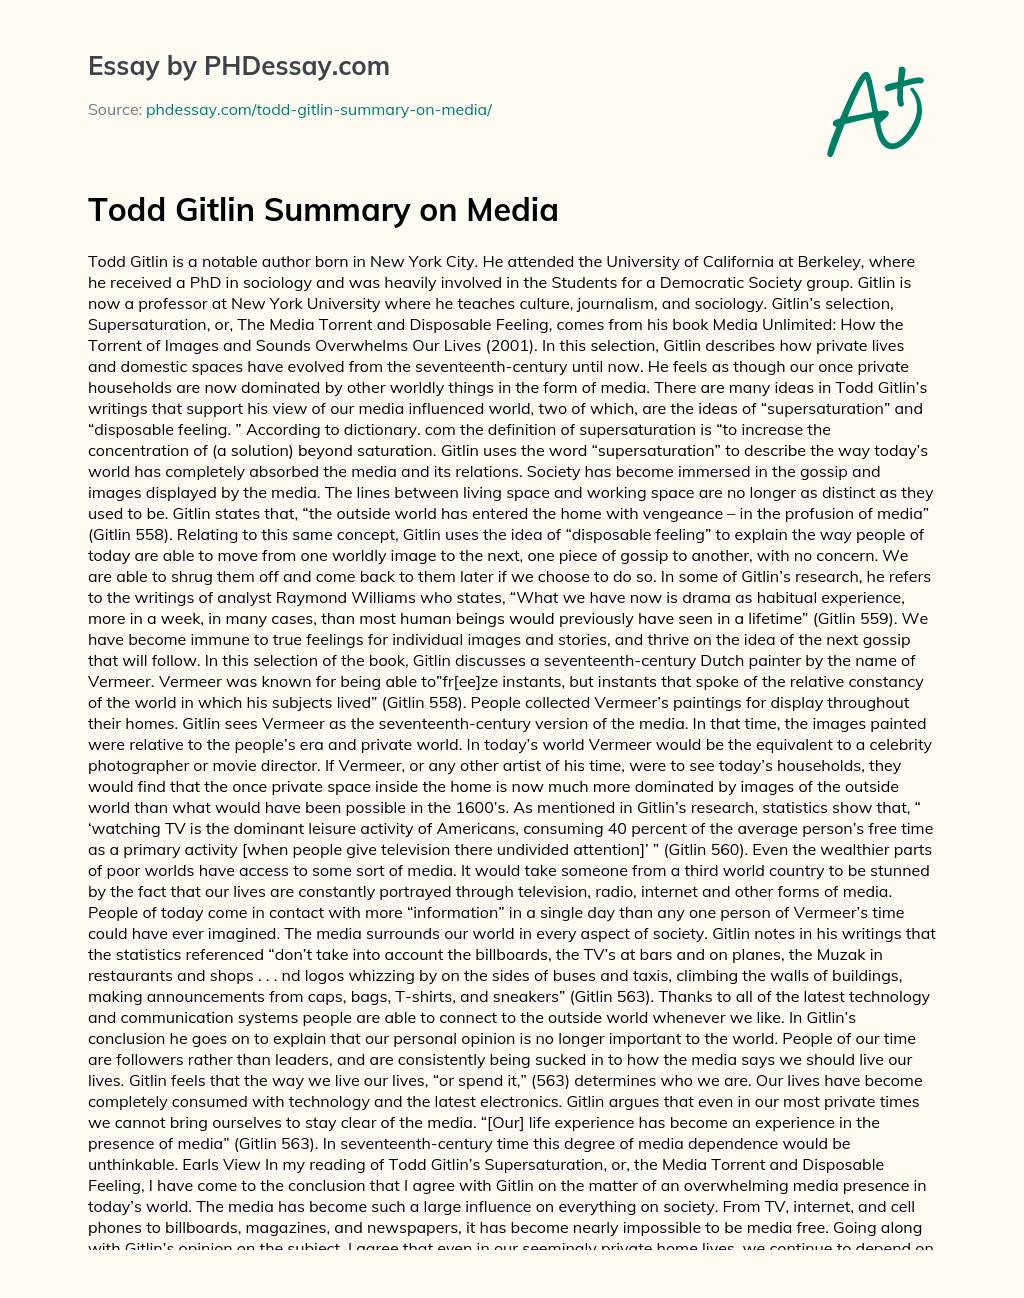 Todd Gitlin Summary on Media essay